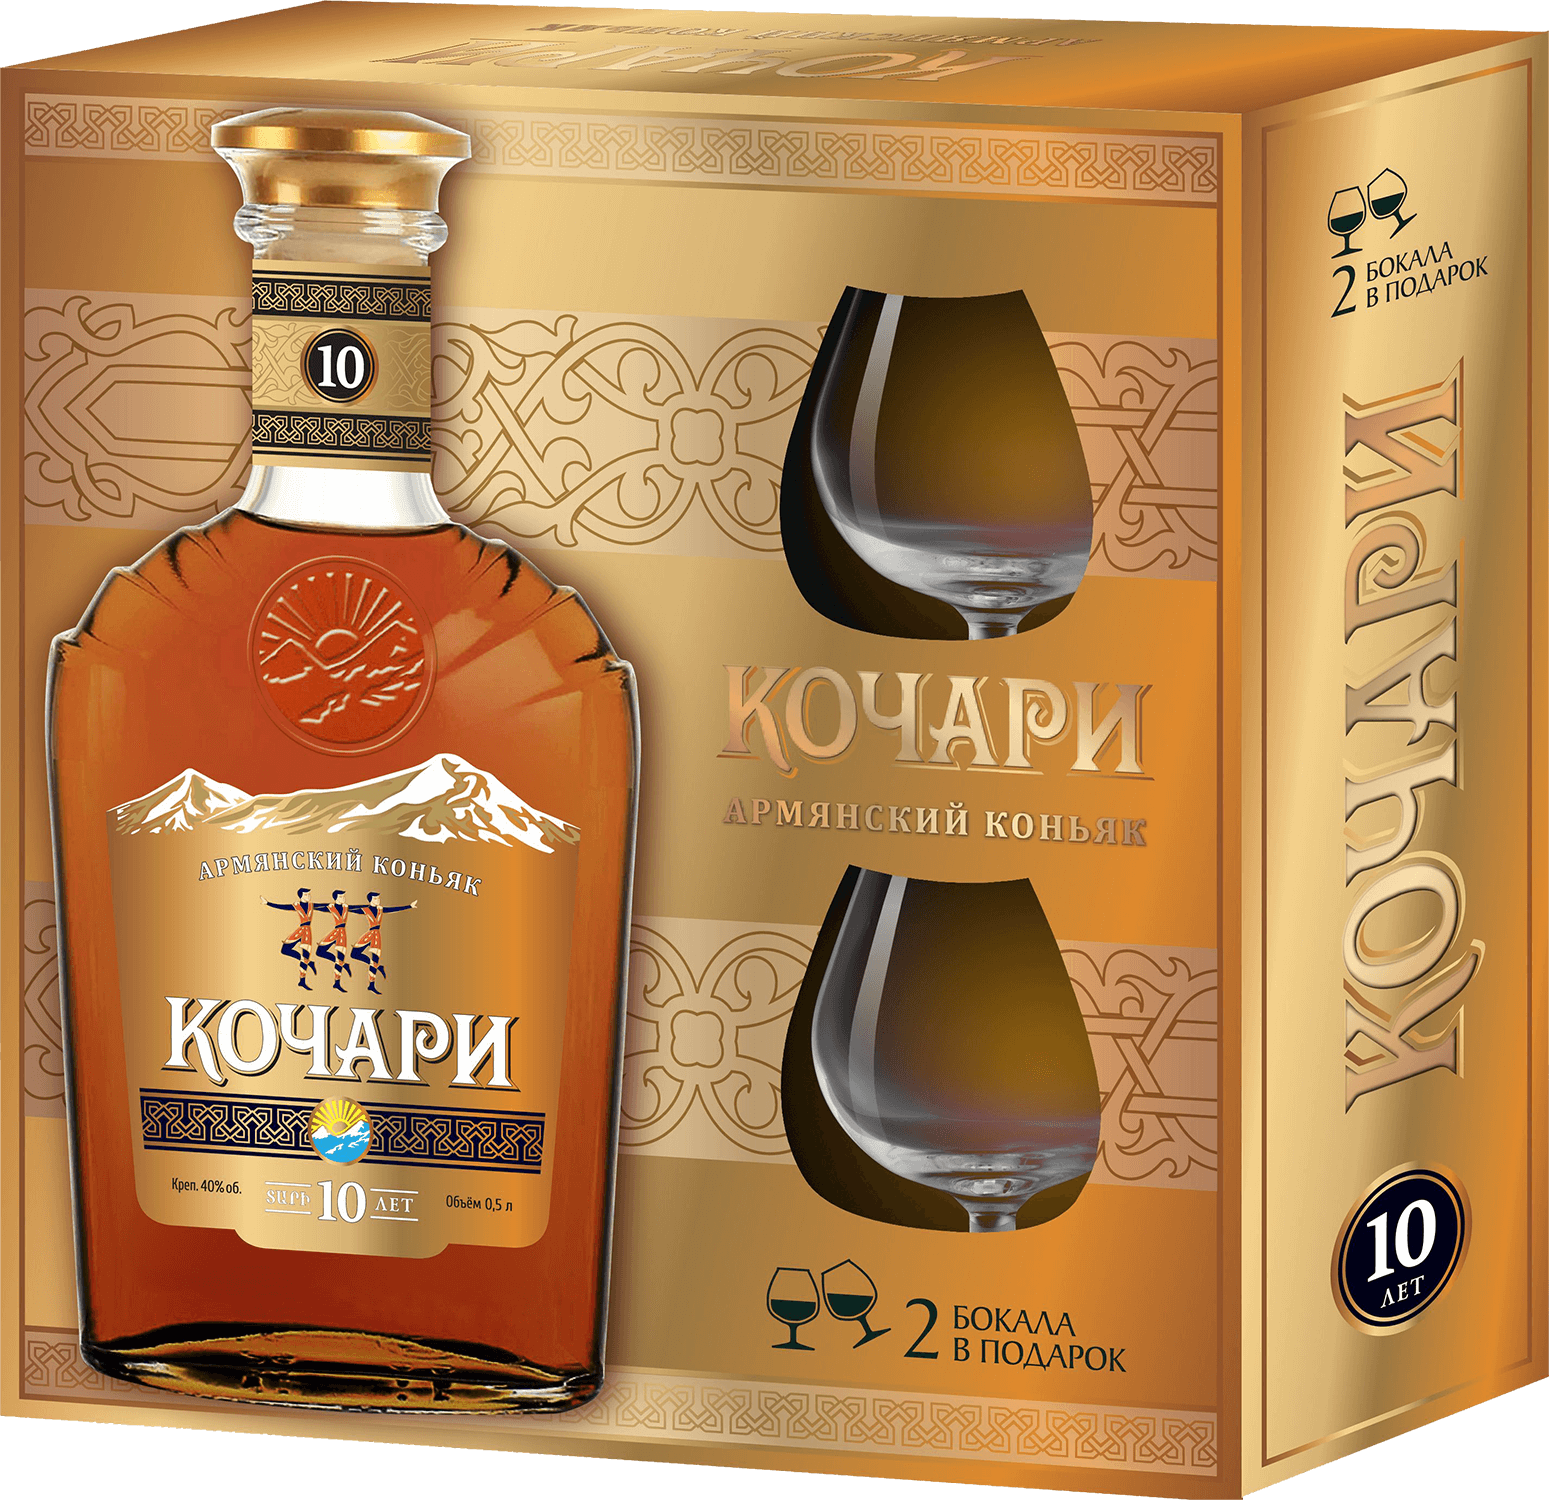 kochari armenian brandy 6 y o Kochari Armenian Brandy 10 Y.O. (gift box with 2 glasses)